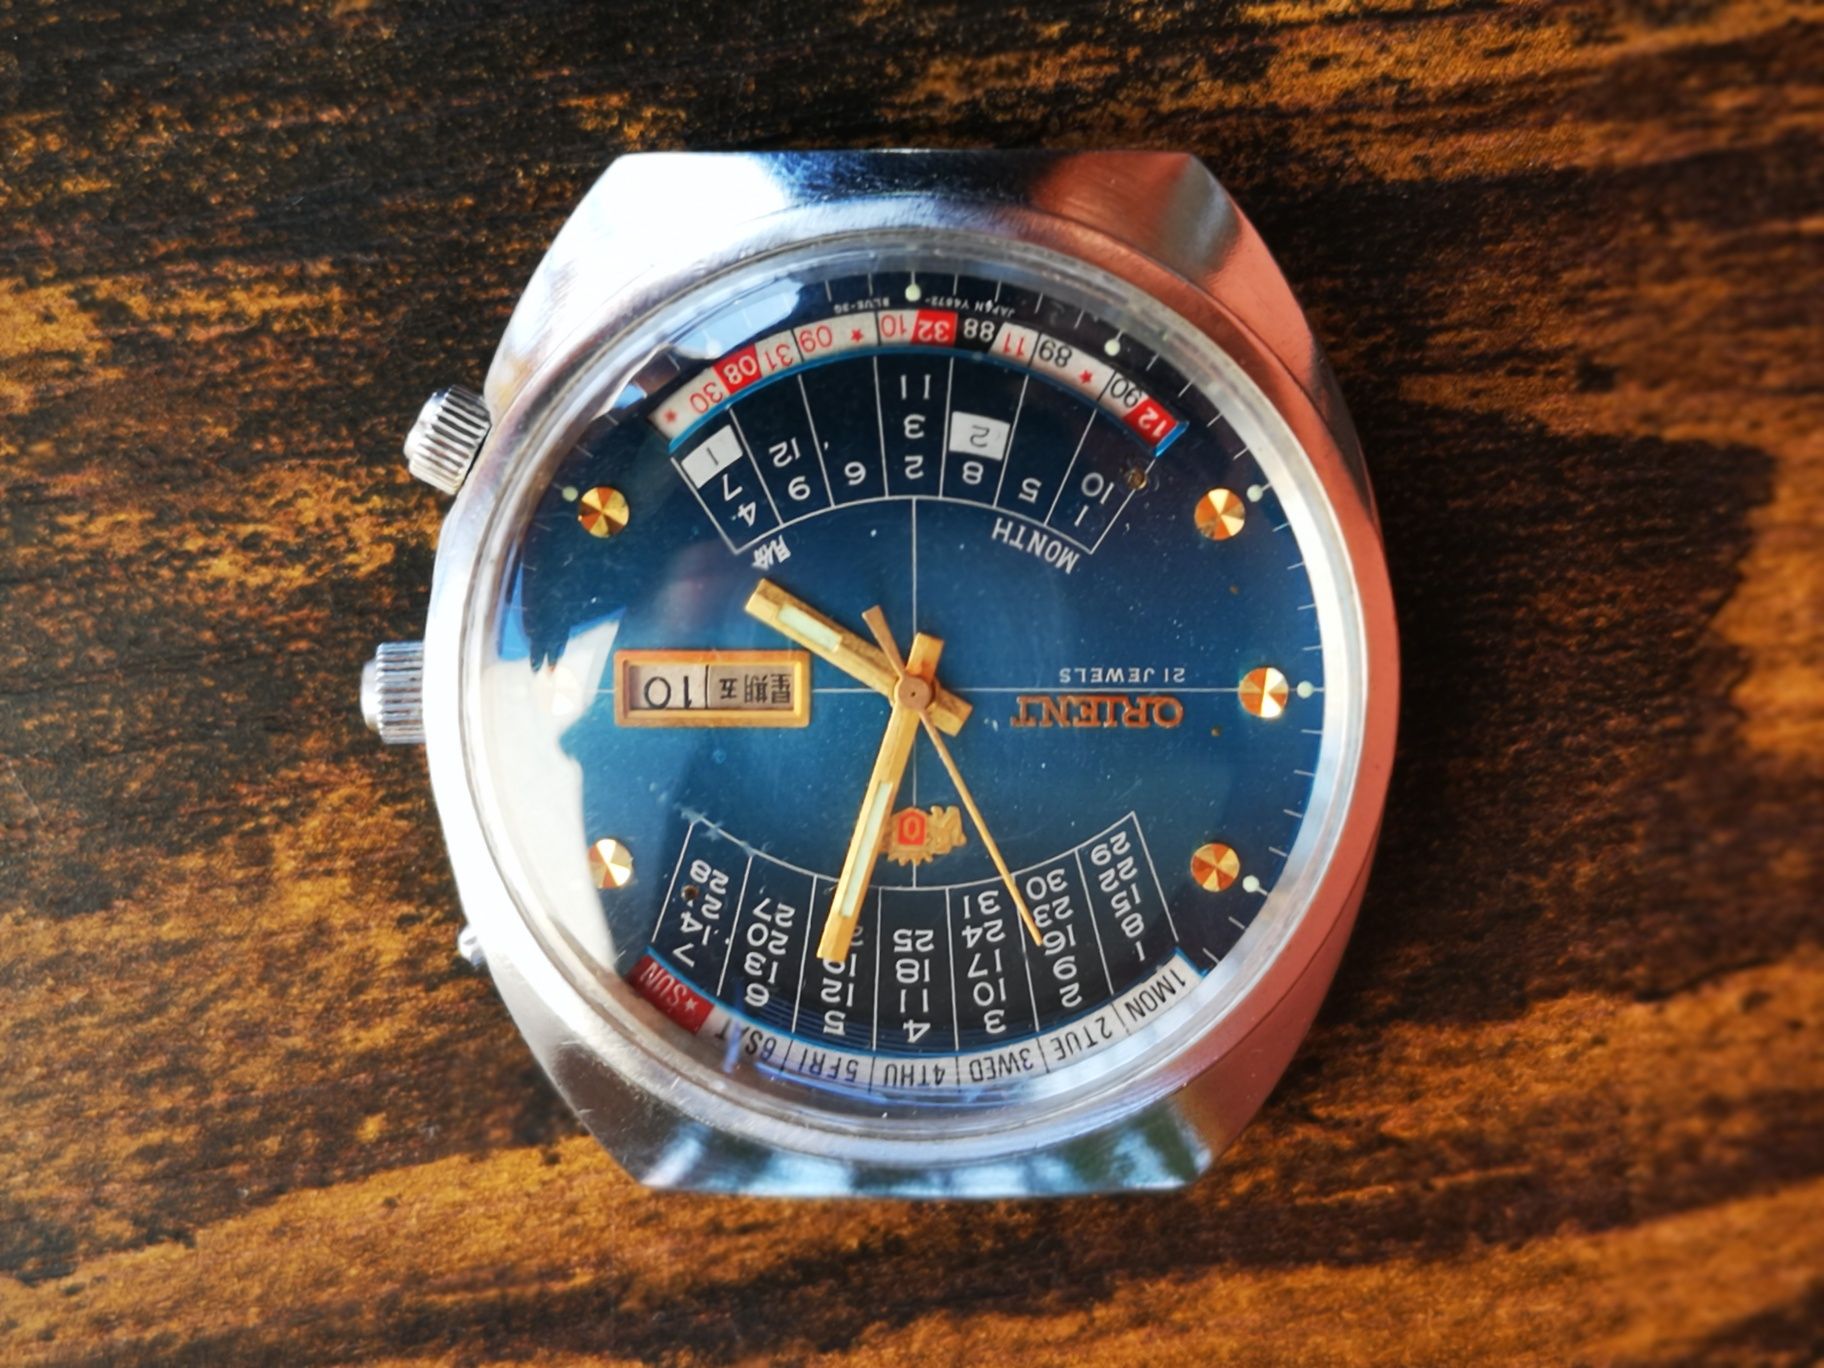 Zegarek ORIENT cesarski patelnia tarcza w kolorze niebieskim, lata 70!